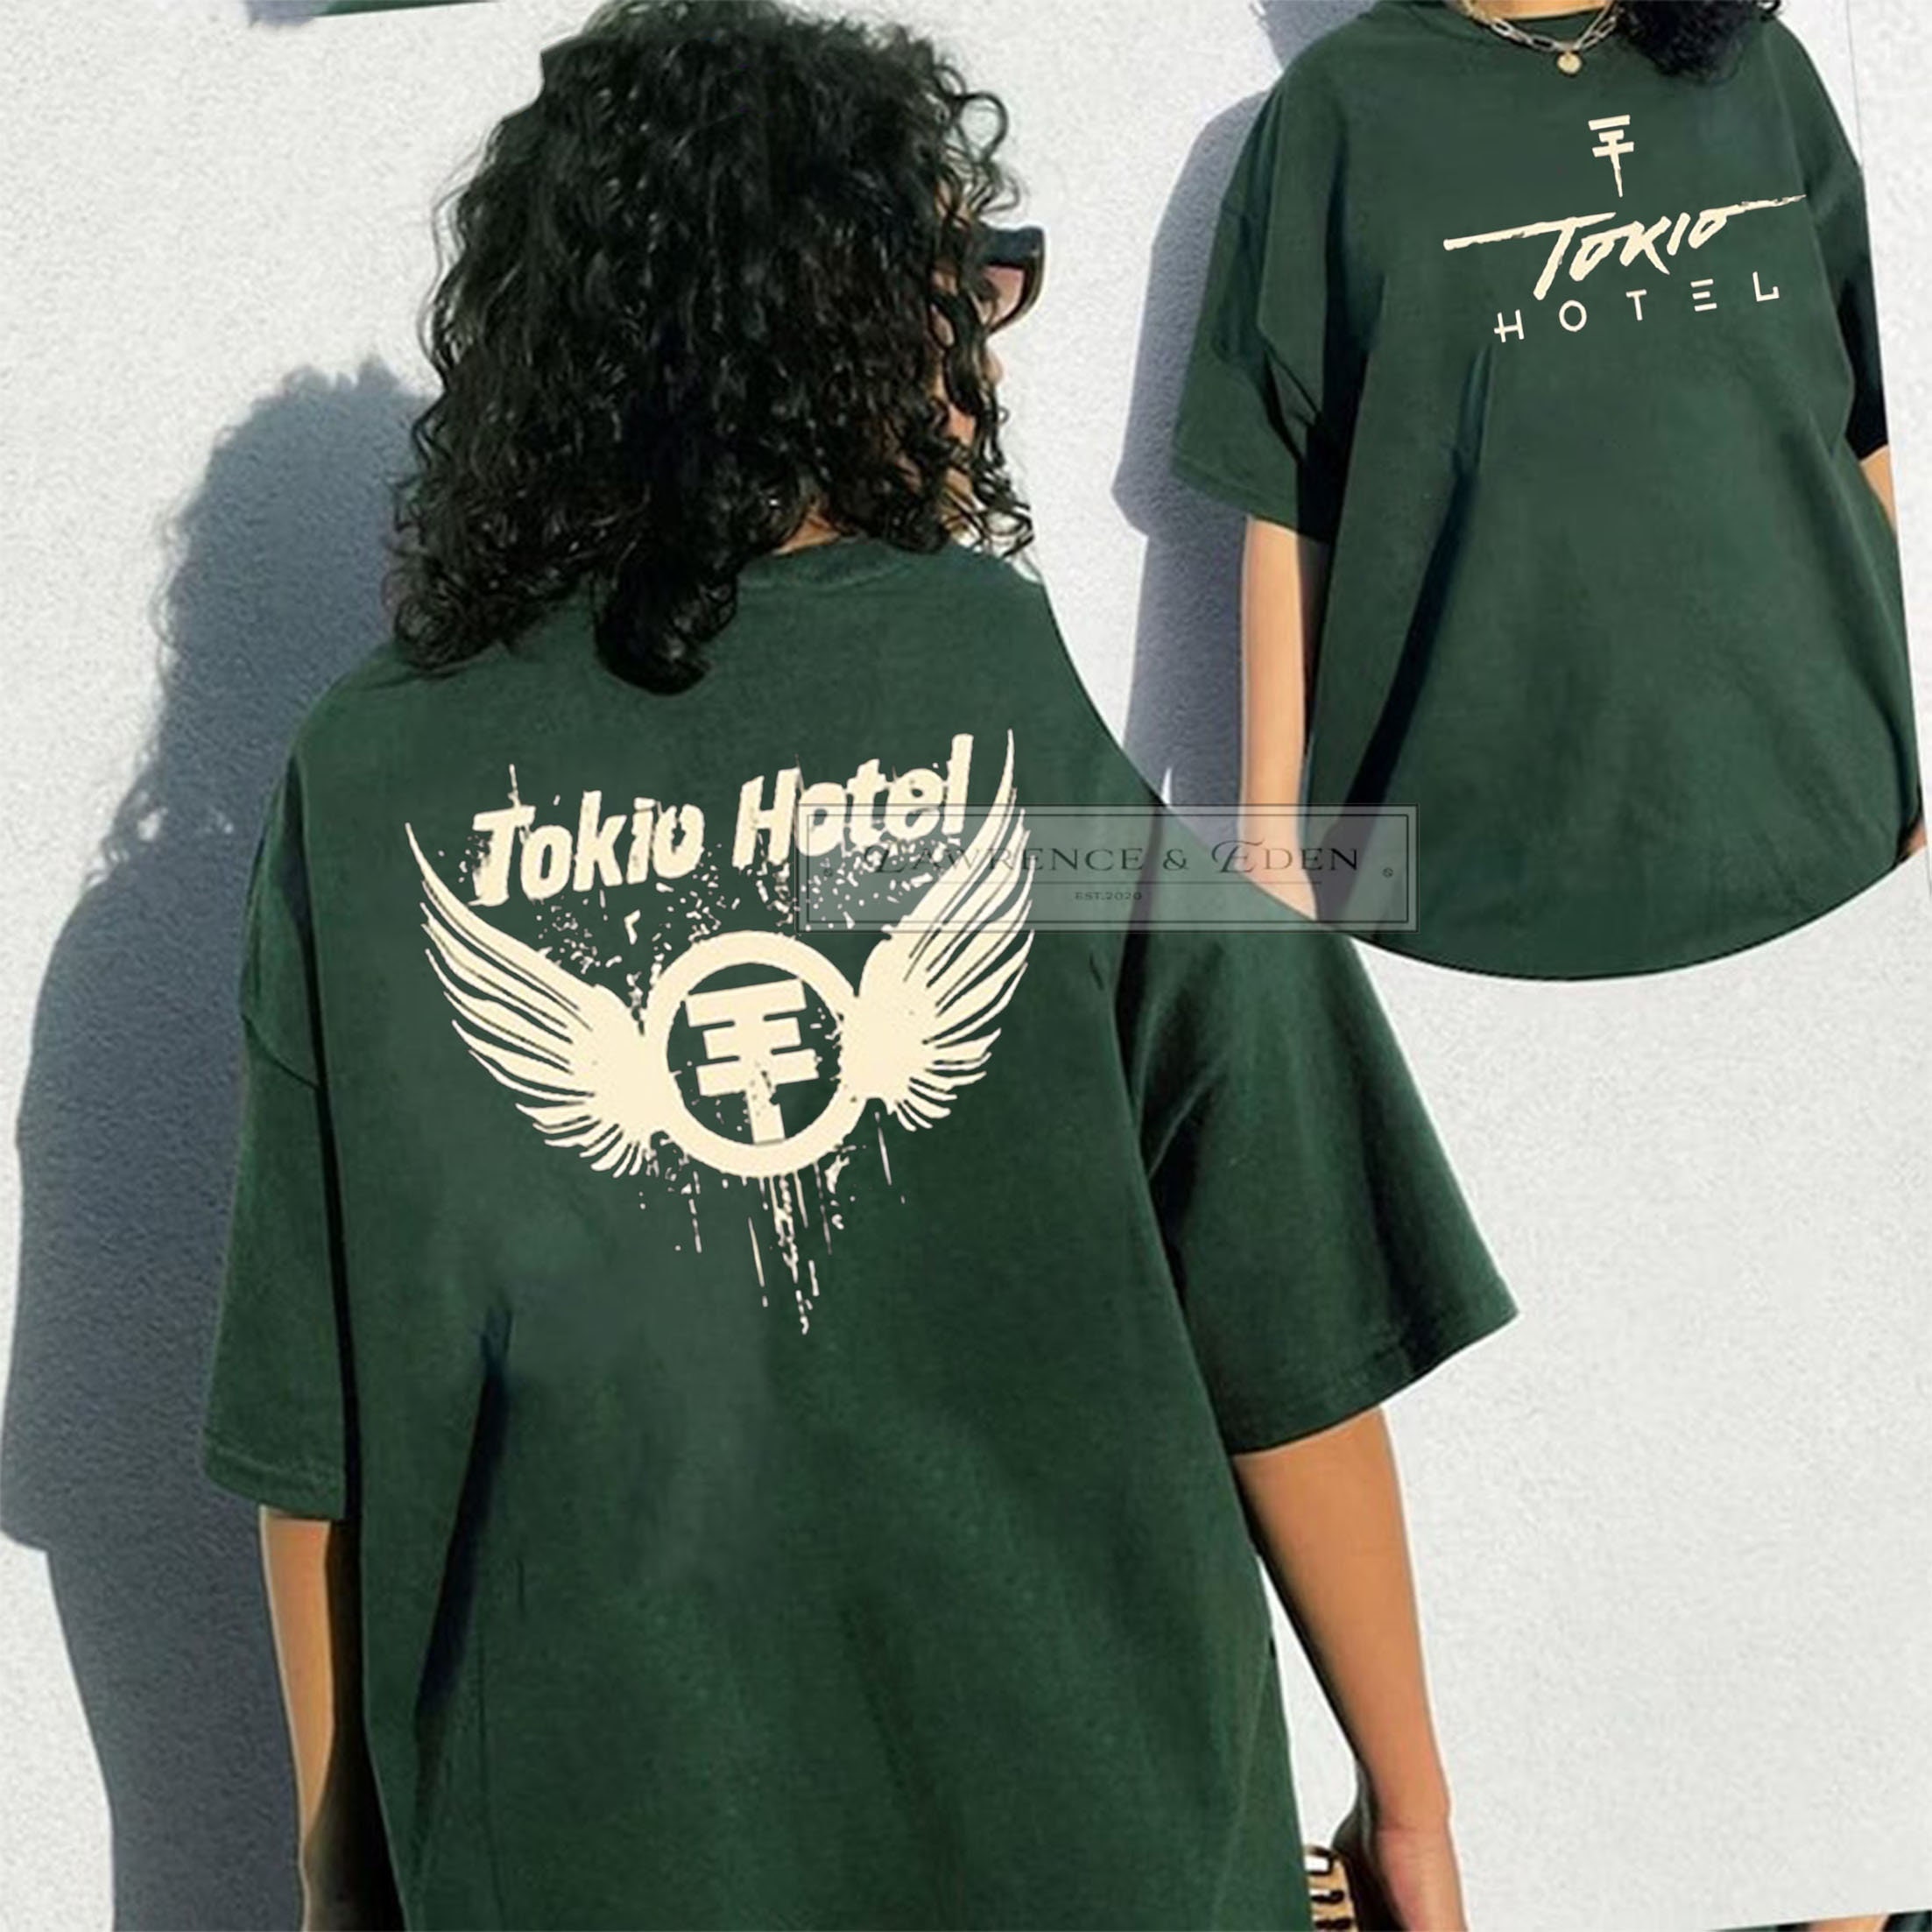 Discover Maglietta Vintage Tokio Hotel Shirt, Tokio Hotel Band Shirt, Tokio Music Shirt